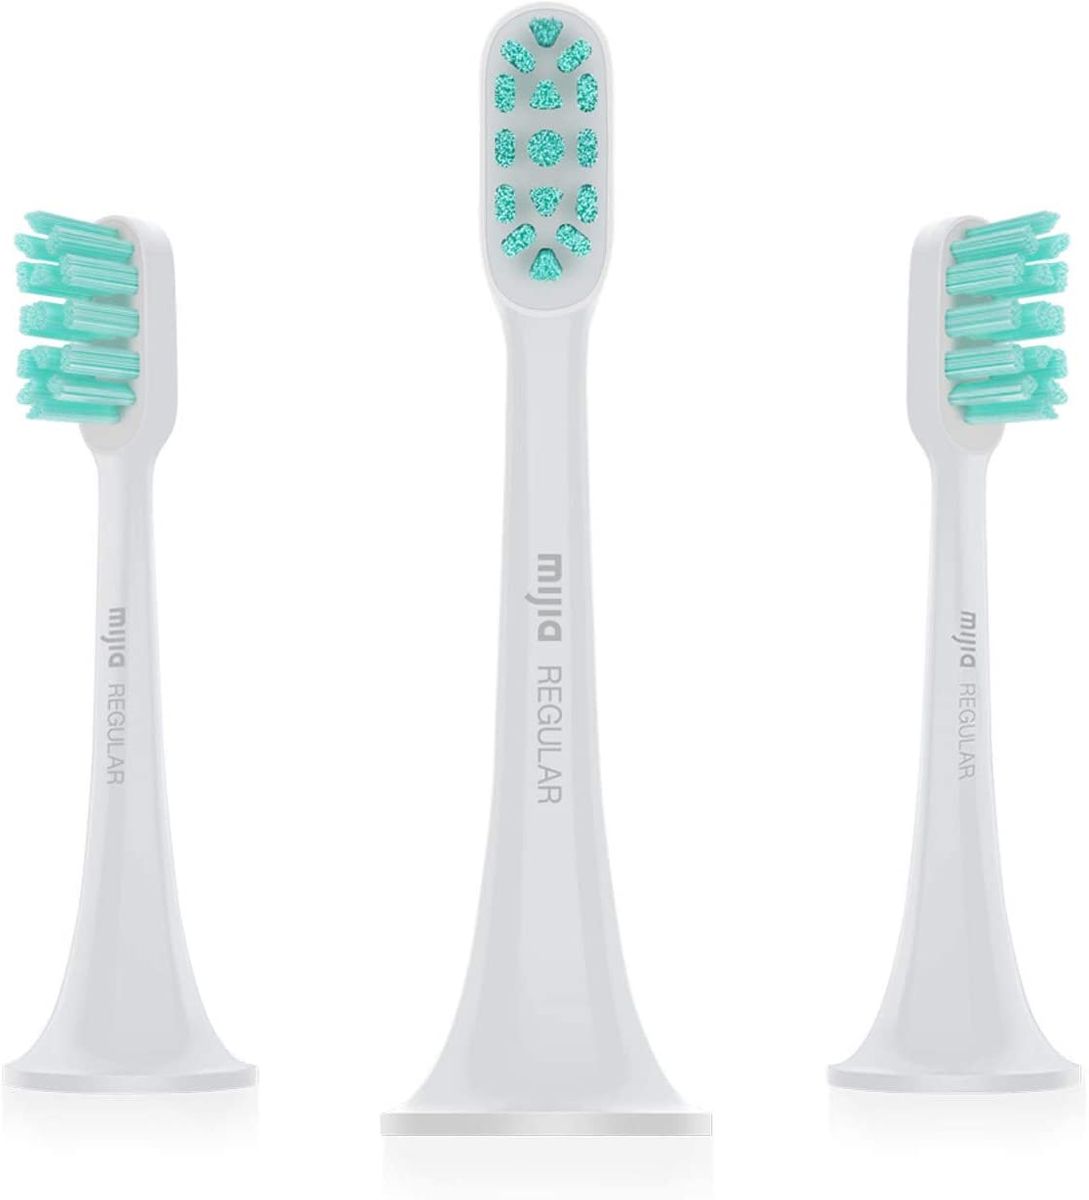 Xiaomi Elektronische Schallzahnbürste-Köpf, weiß, 3er-Set, abgerundete Borsten, schonende zahnfleischfreundlische Reinigung, passend Mi Electric Toothbrush